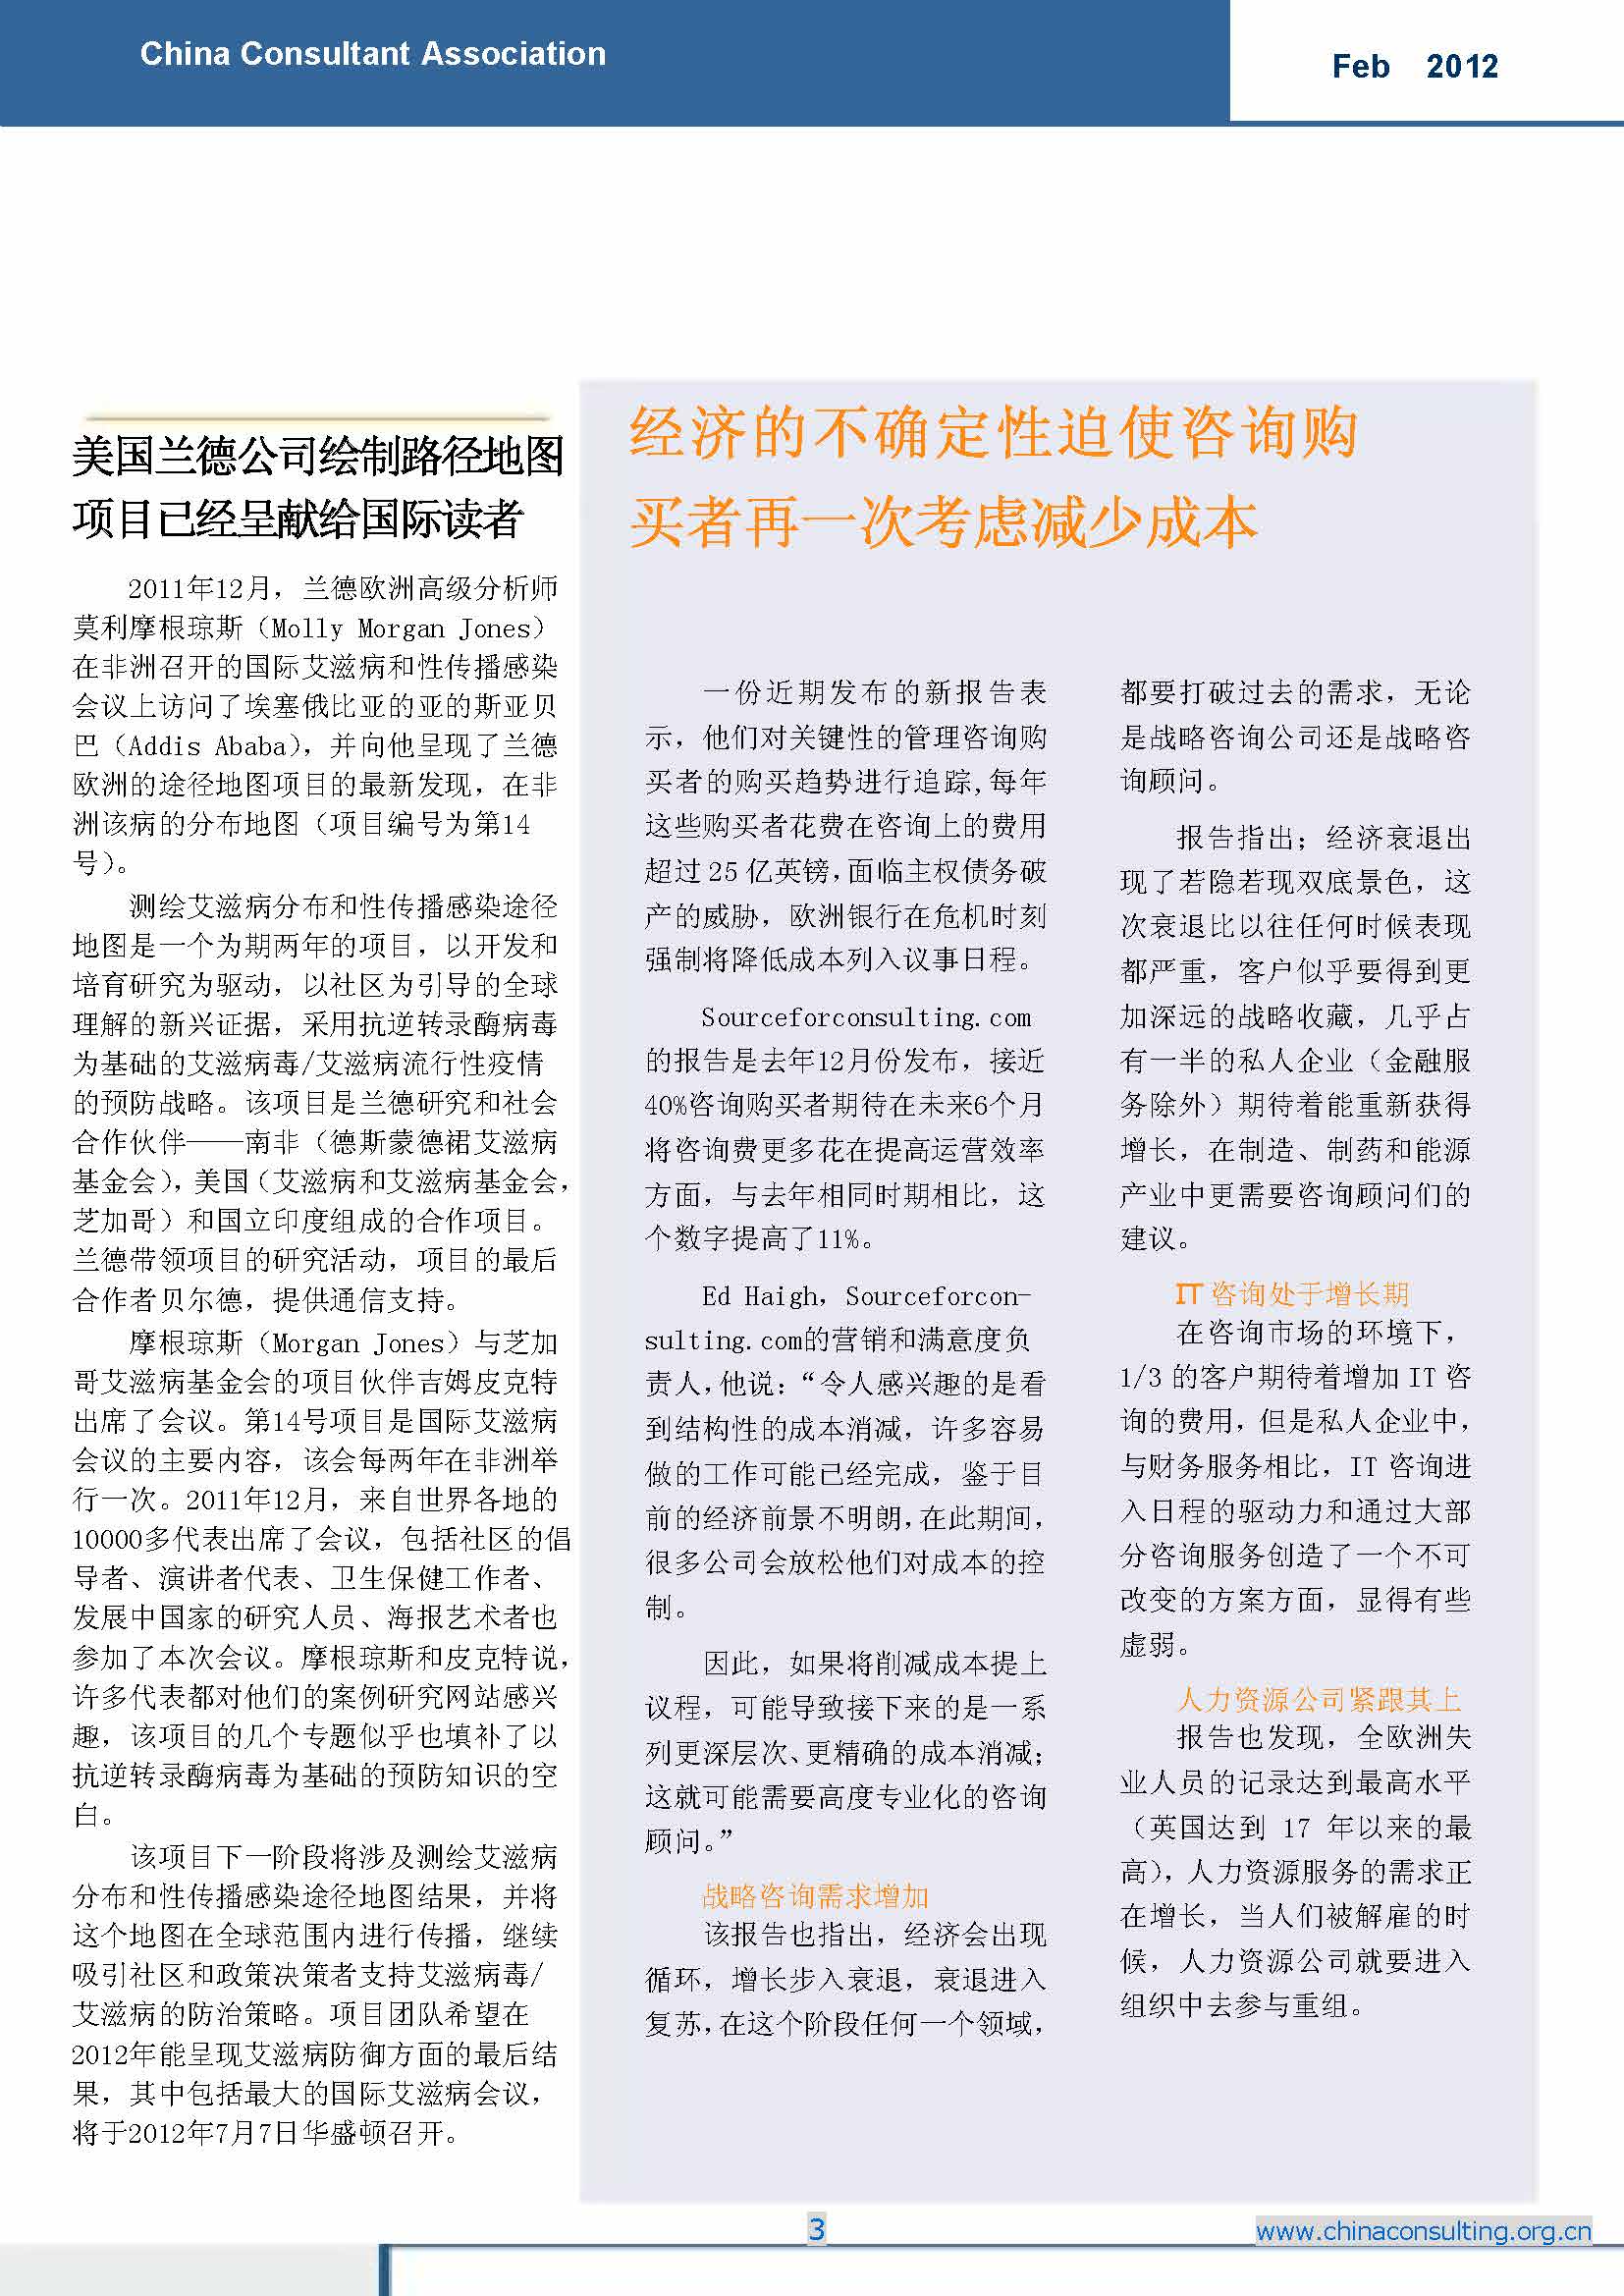 5中国科技咨询协会国际快讯（第五期）_页面_05.jpg